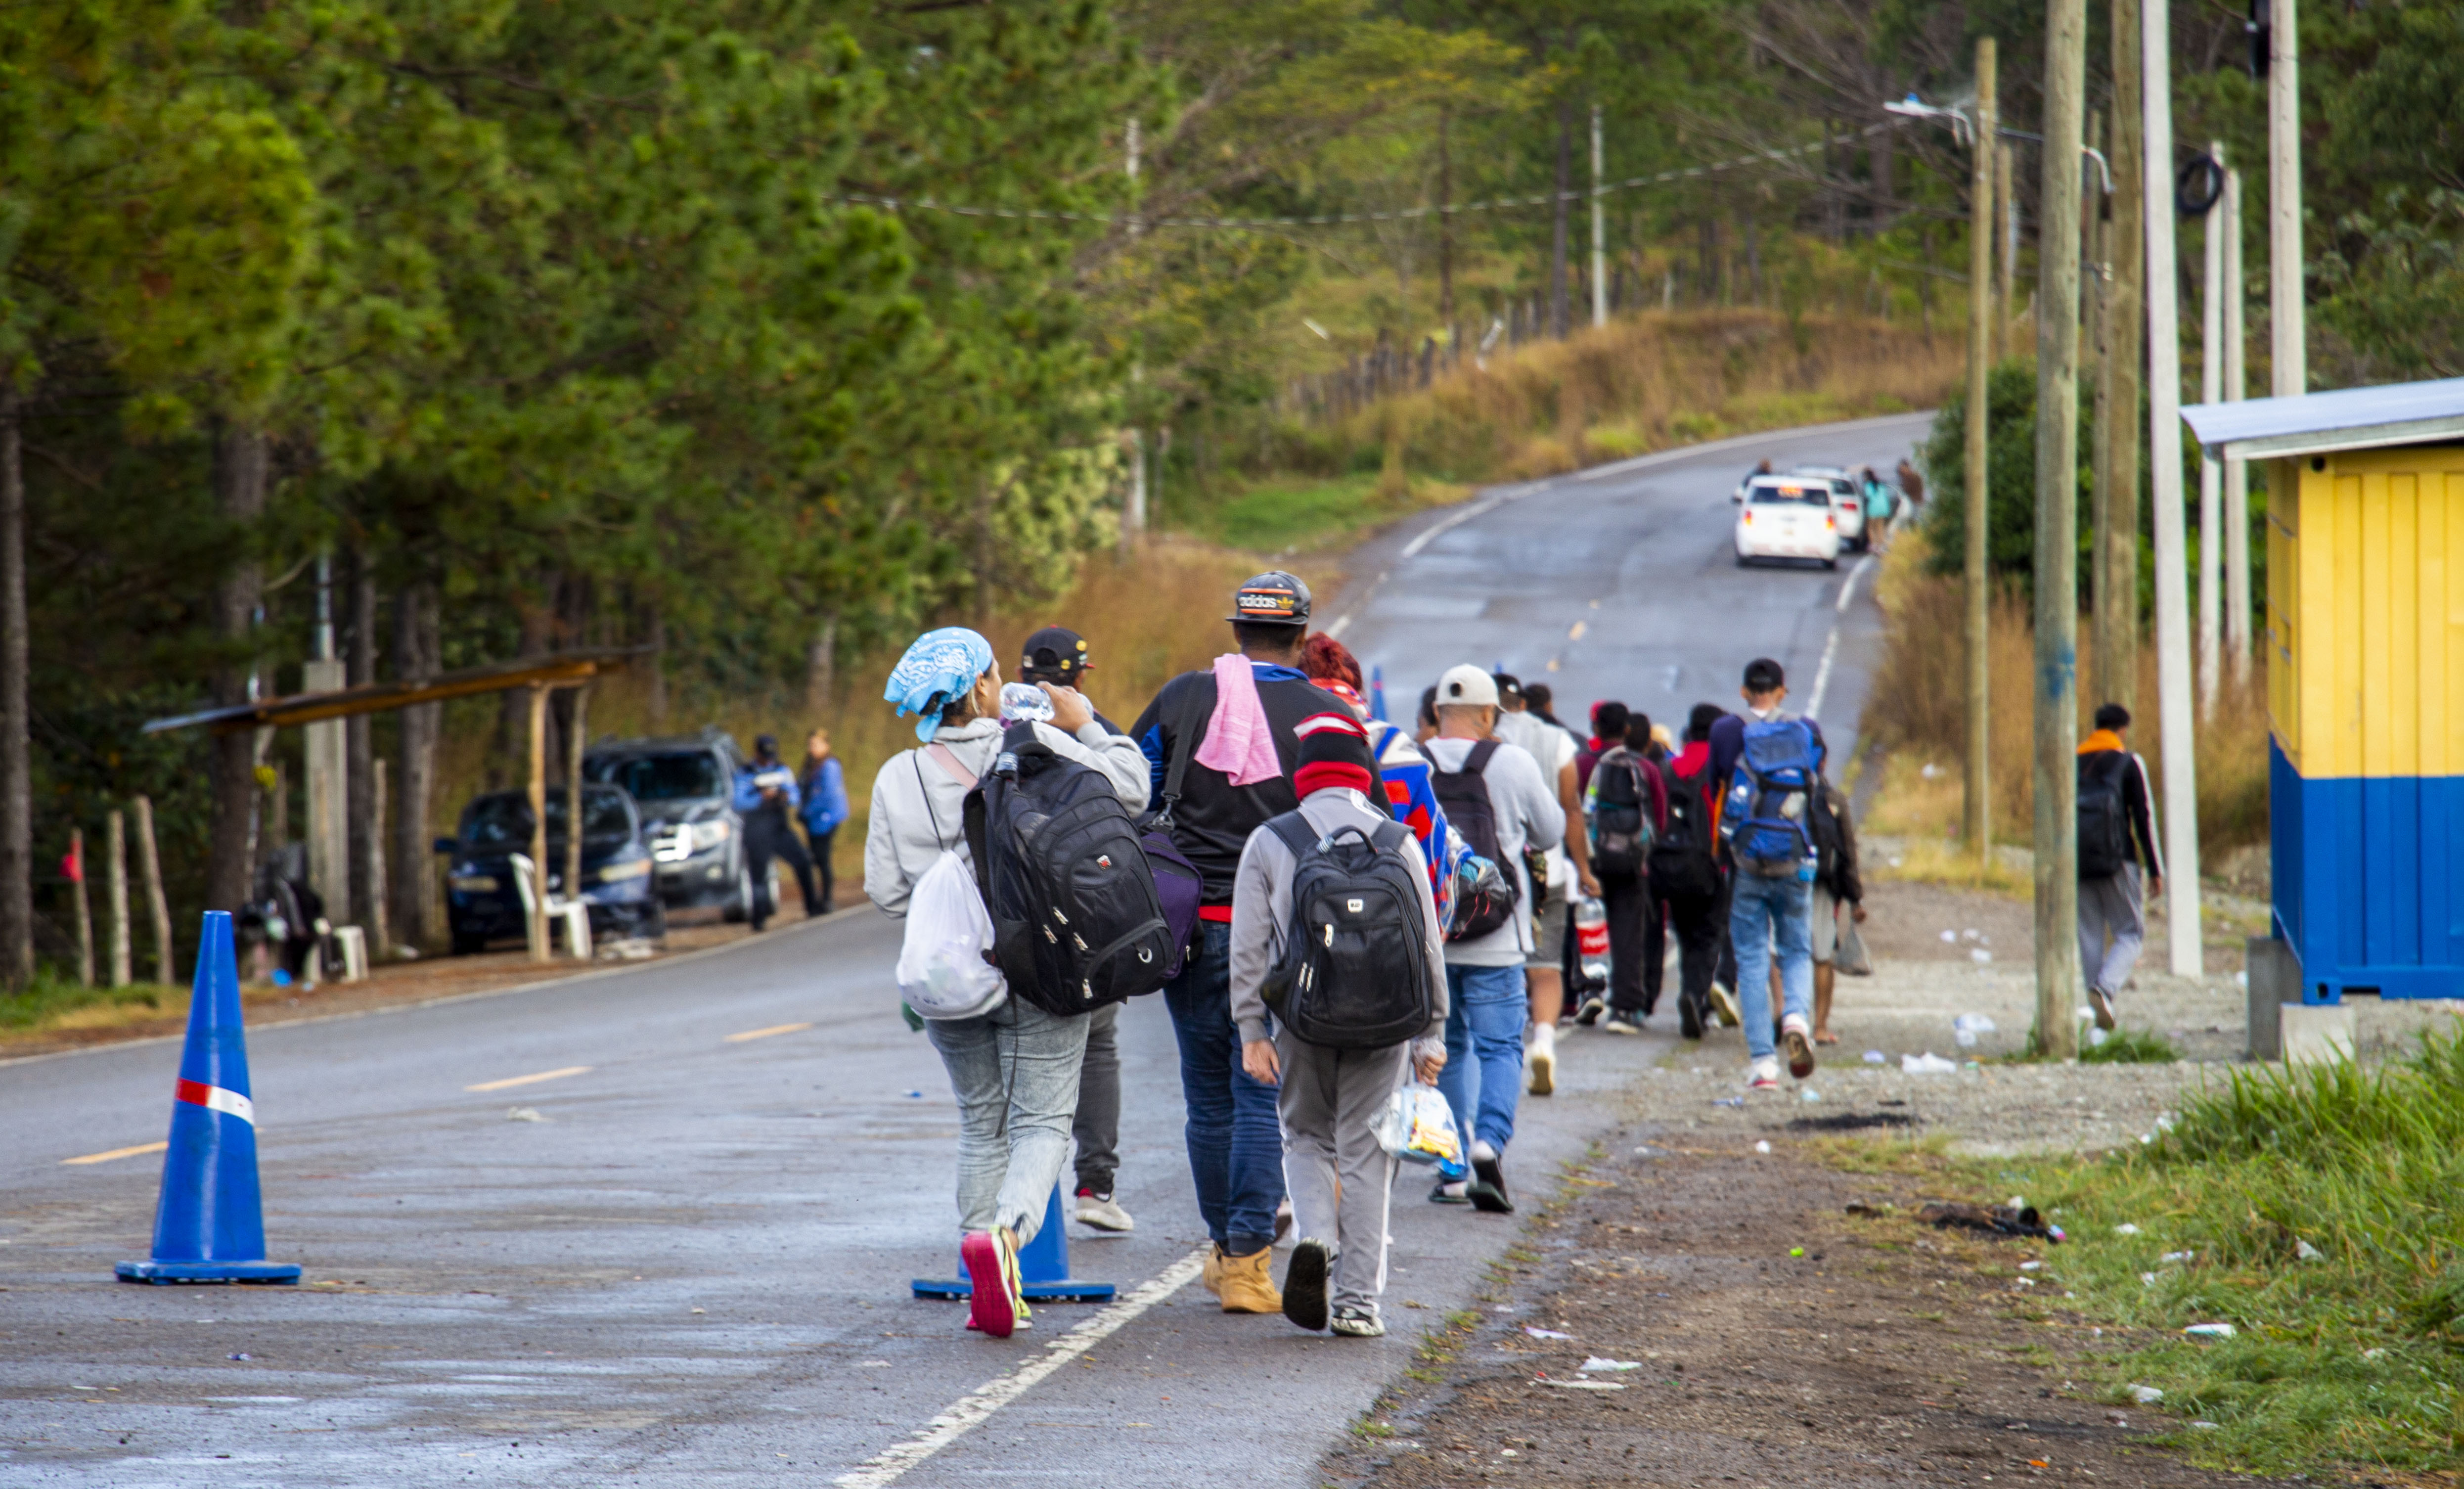 Grupo de personas migrantes caminan por una carretera